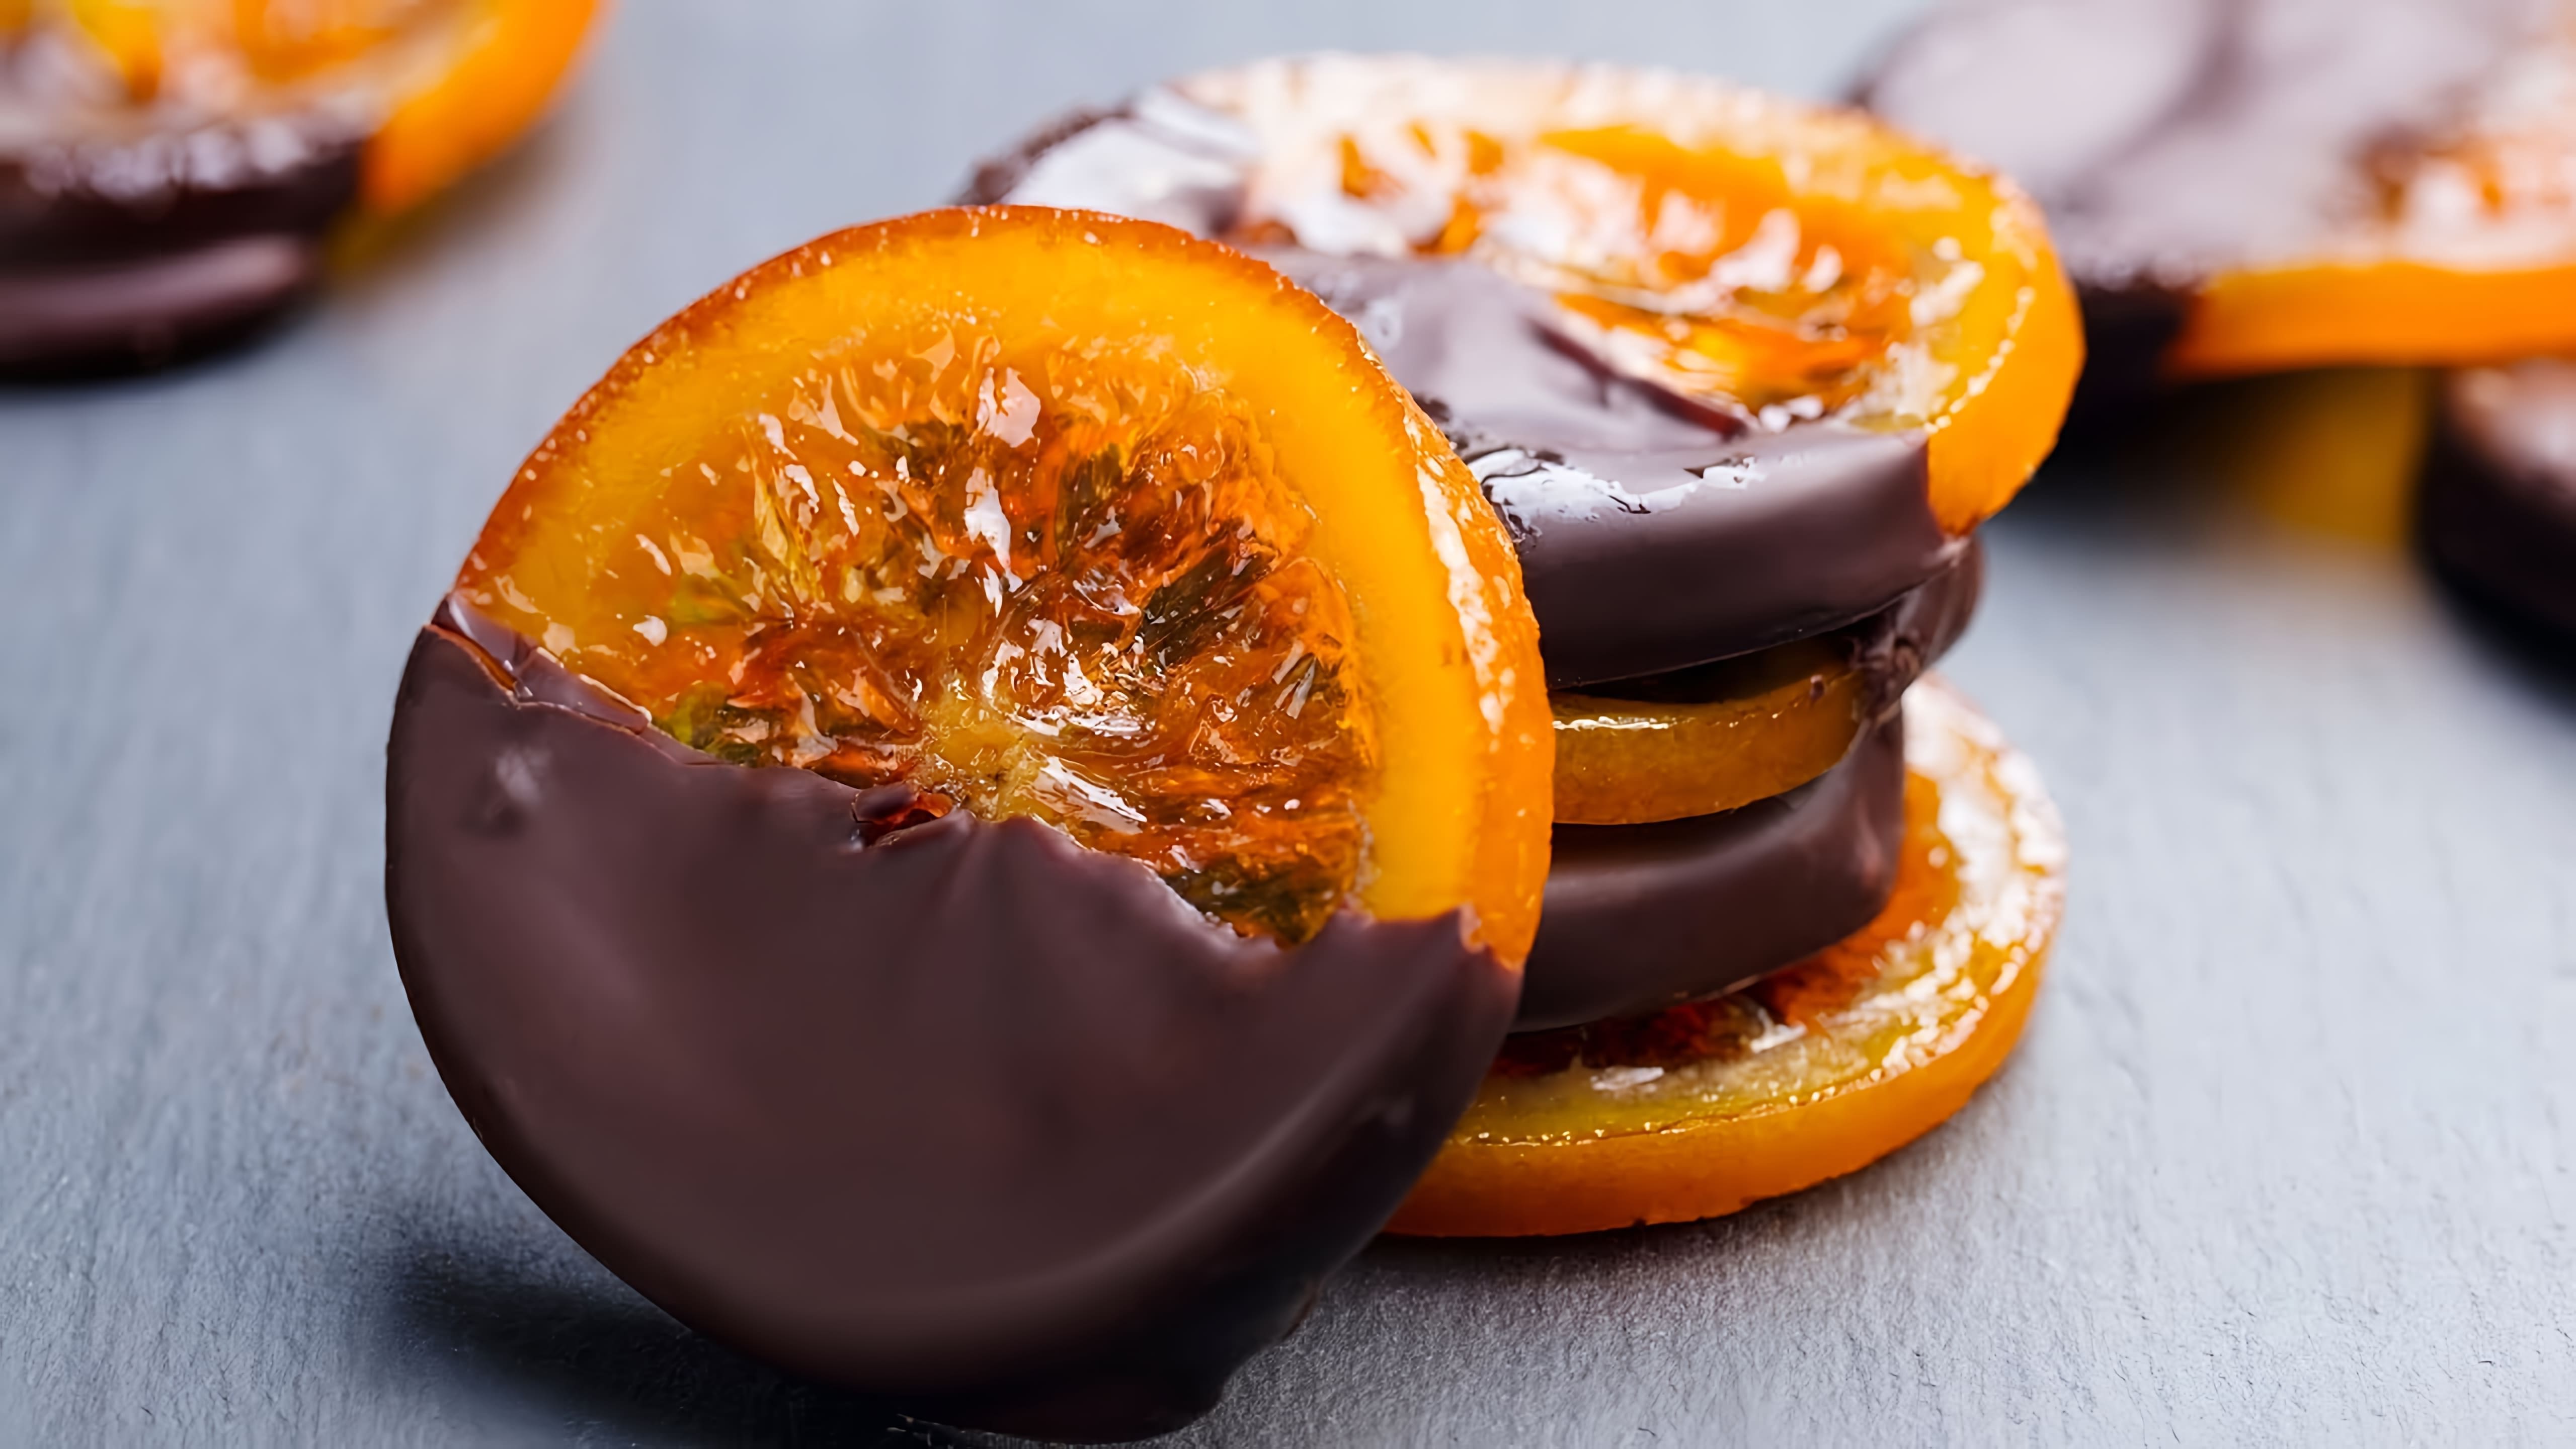 В этом видео демонстрируется процесс приготовления апельсинов в шоколаде